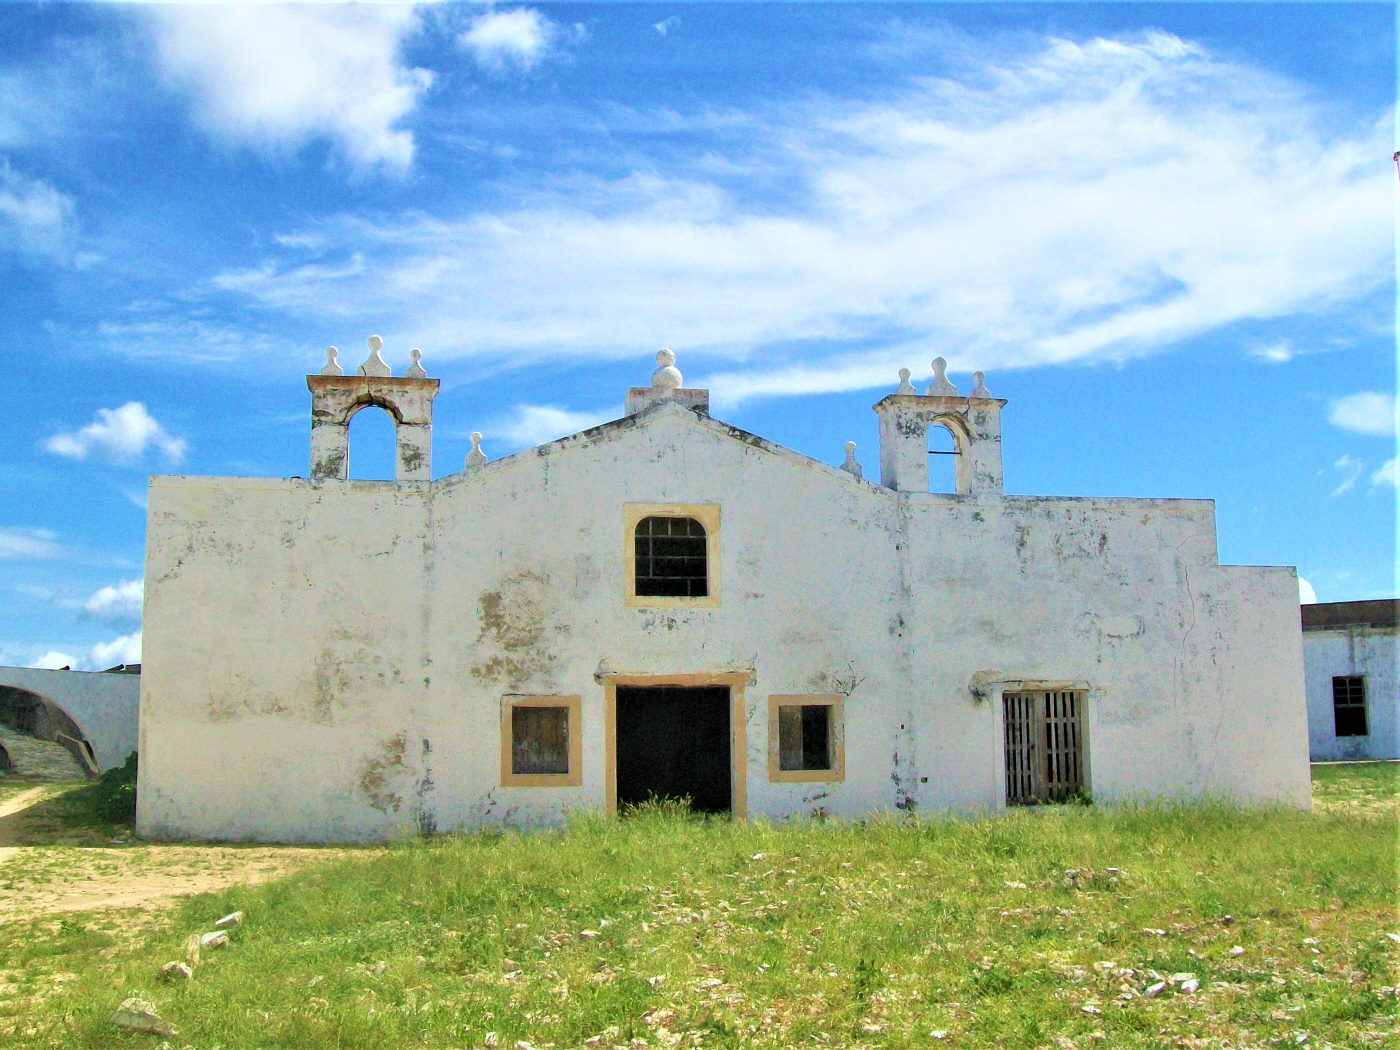 Nossa Senhora do Baluarte Church 1522 in Fort São Sebastião - Mozambique Island UNESCO WORLD Heritage SIte